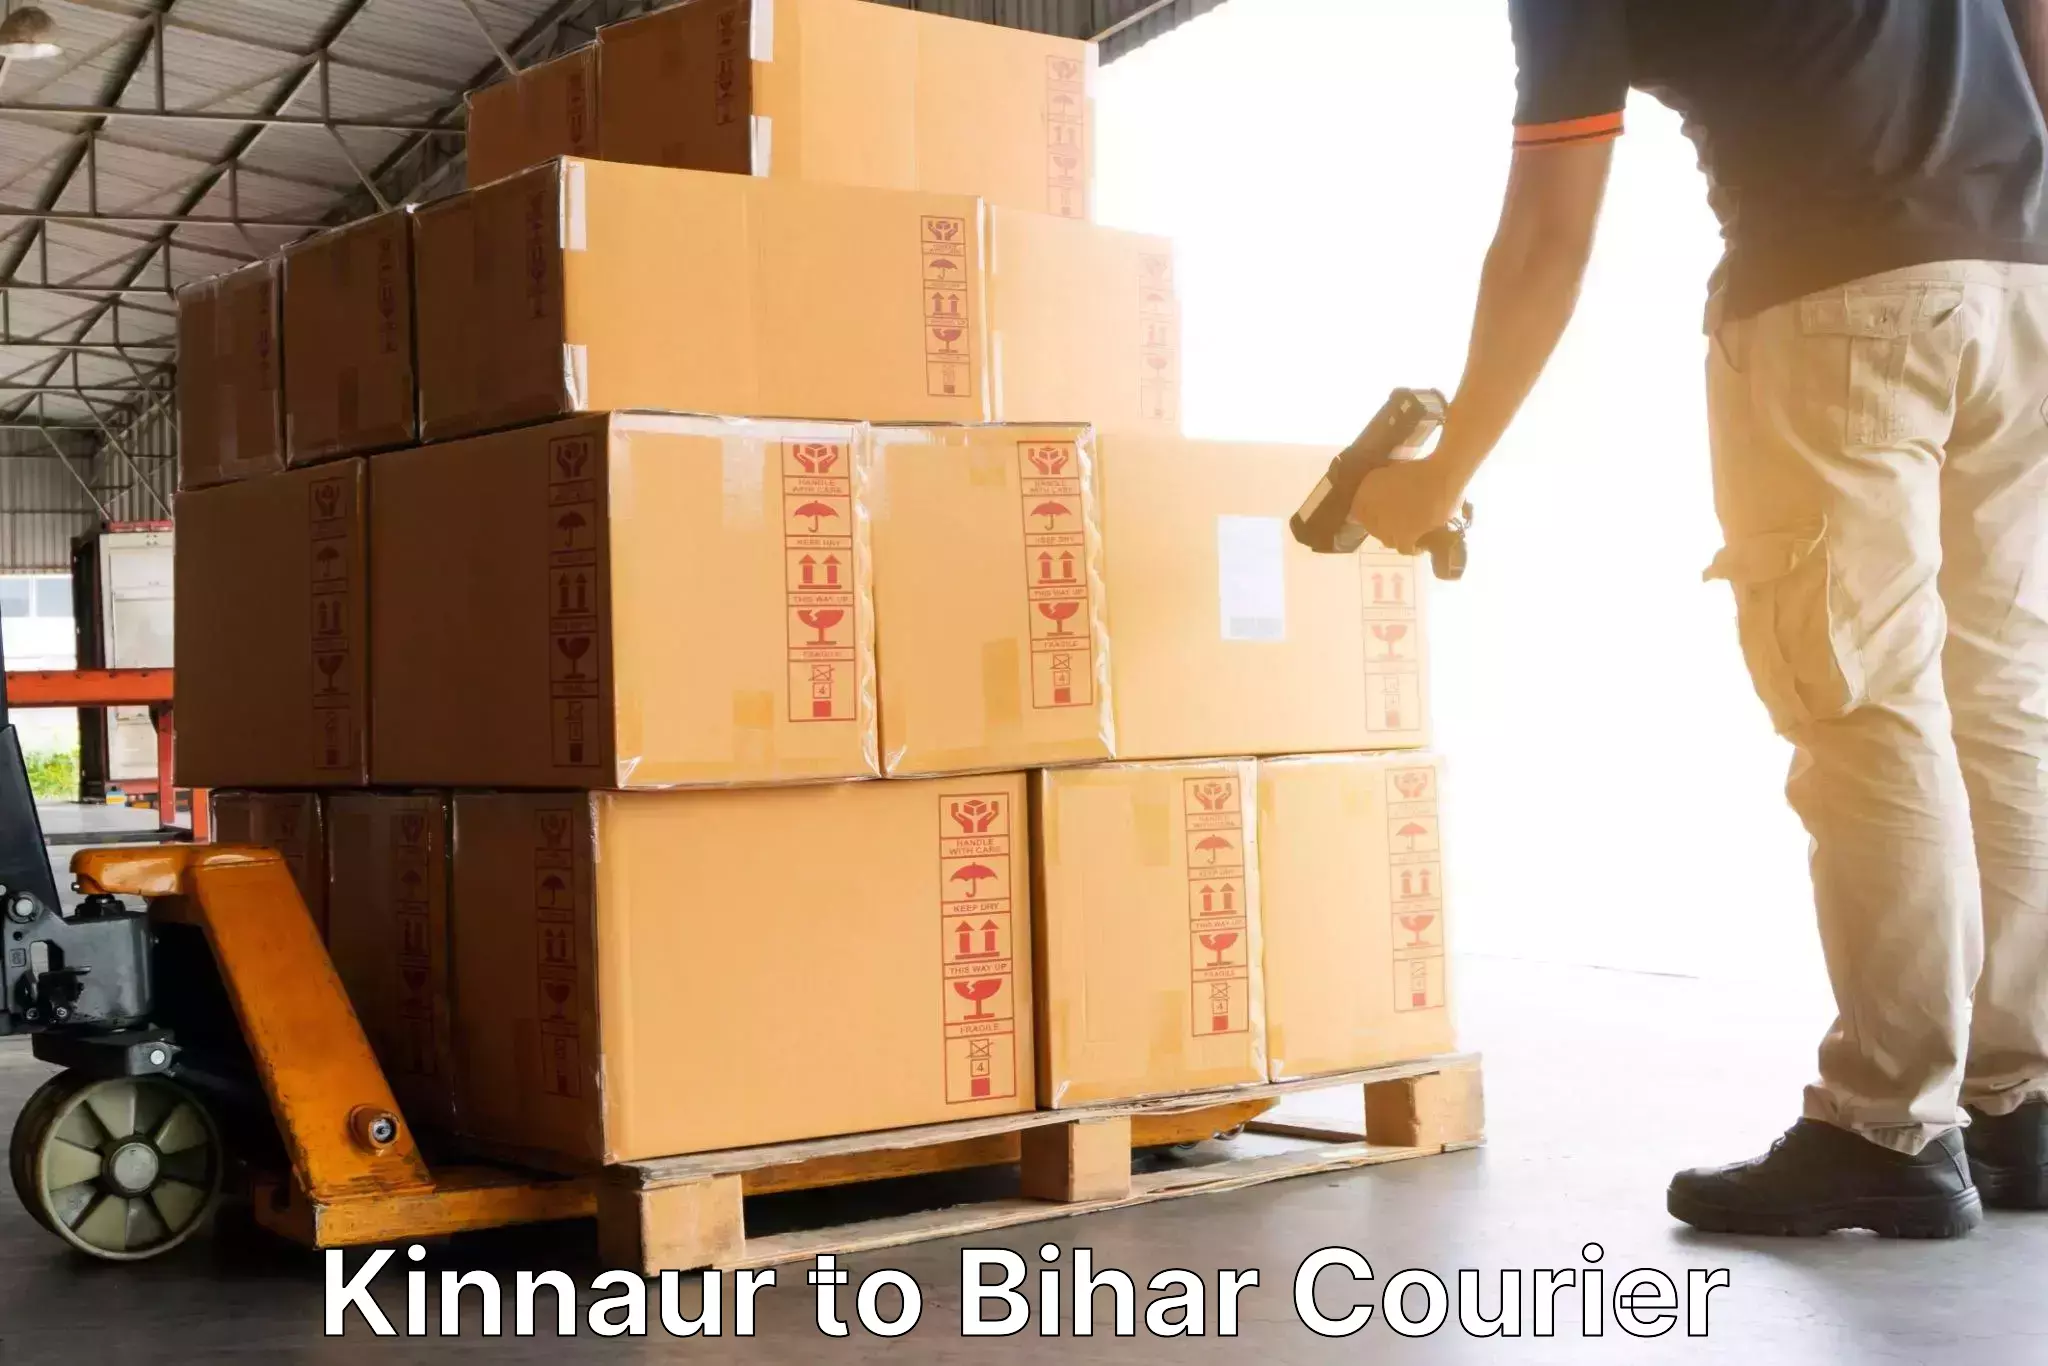 Customer-oriented courier services Kinnaur to Pupri